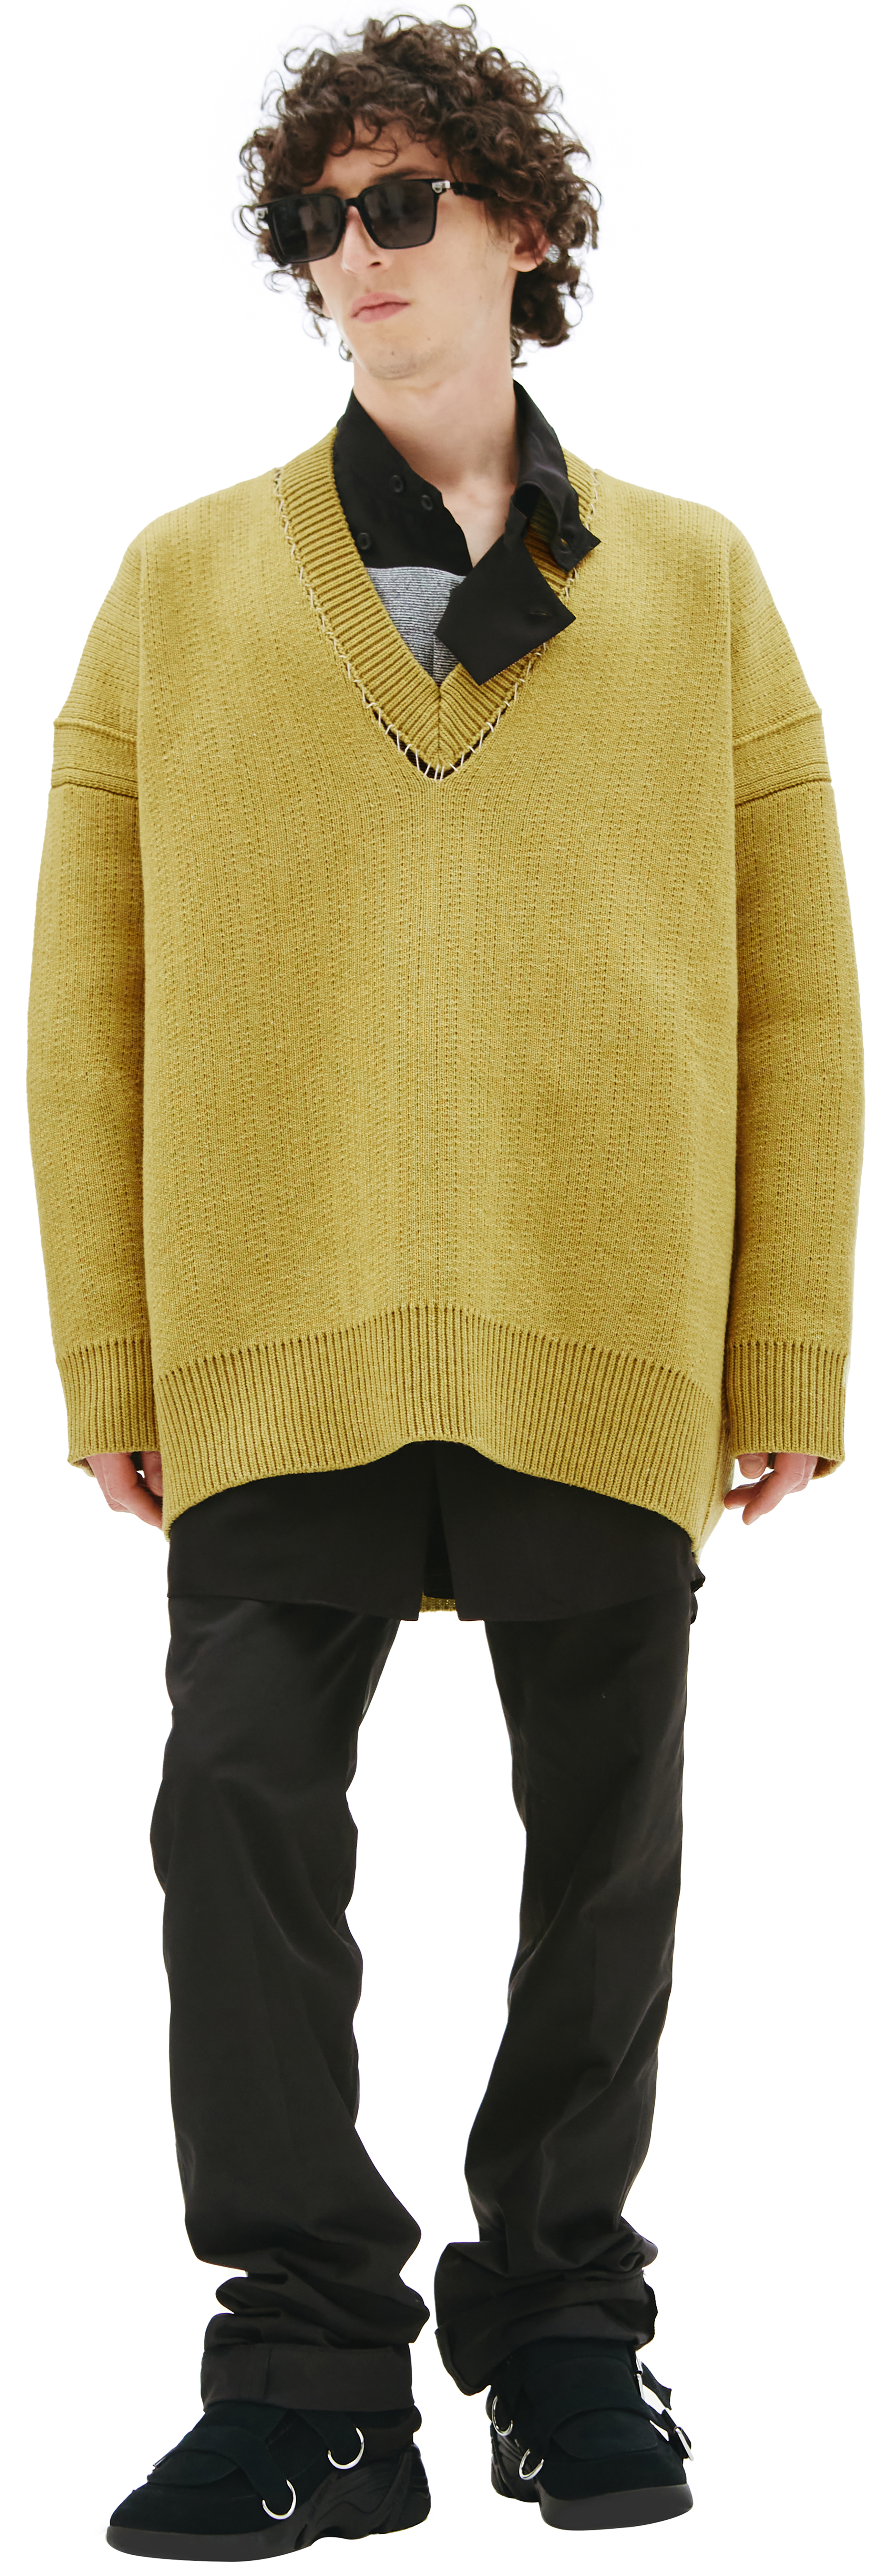 Buy Raf Simons men green v-neck oversize sweater for $1,974 online